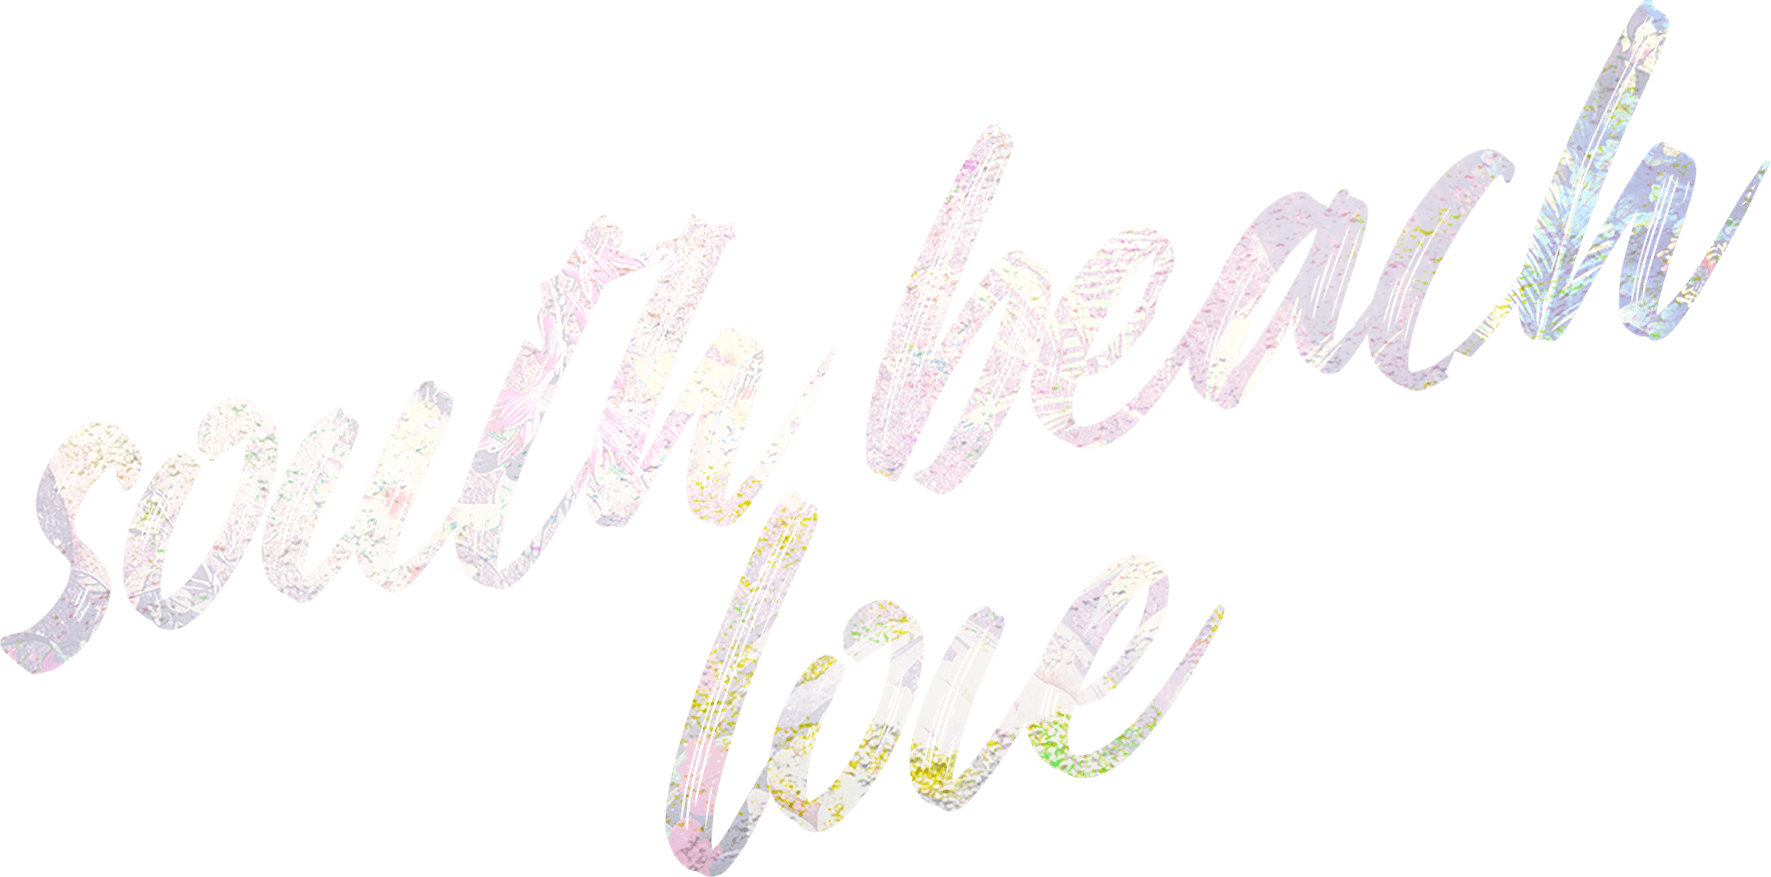 South Beach Love logo